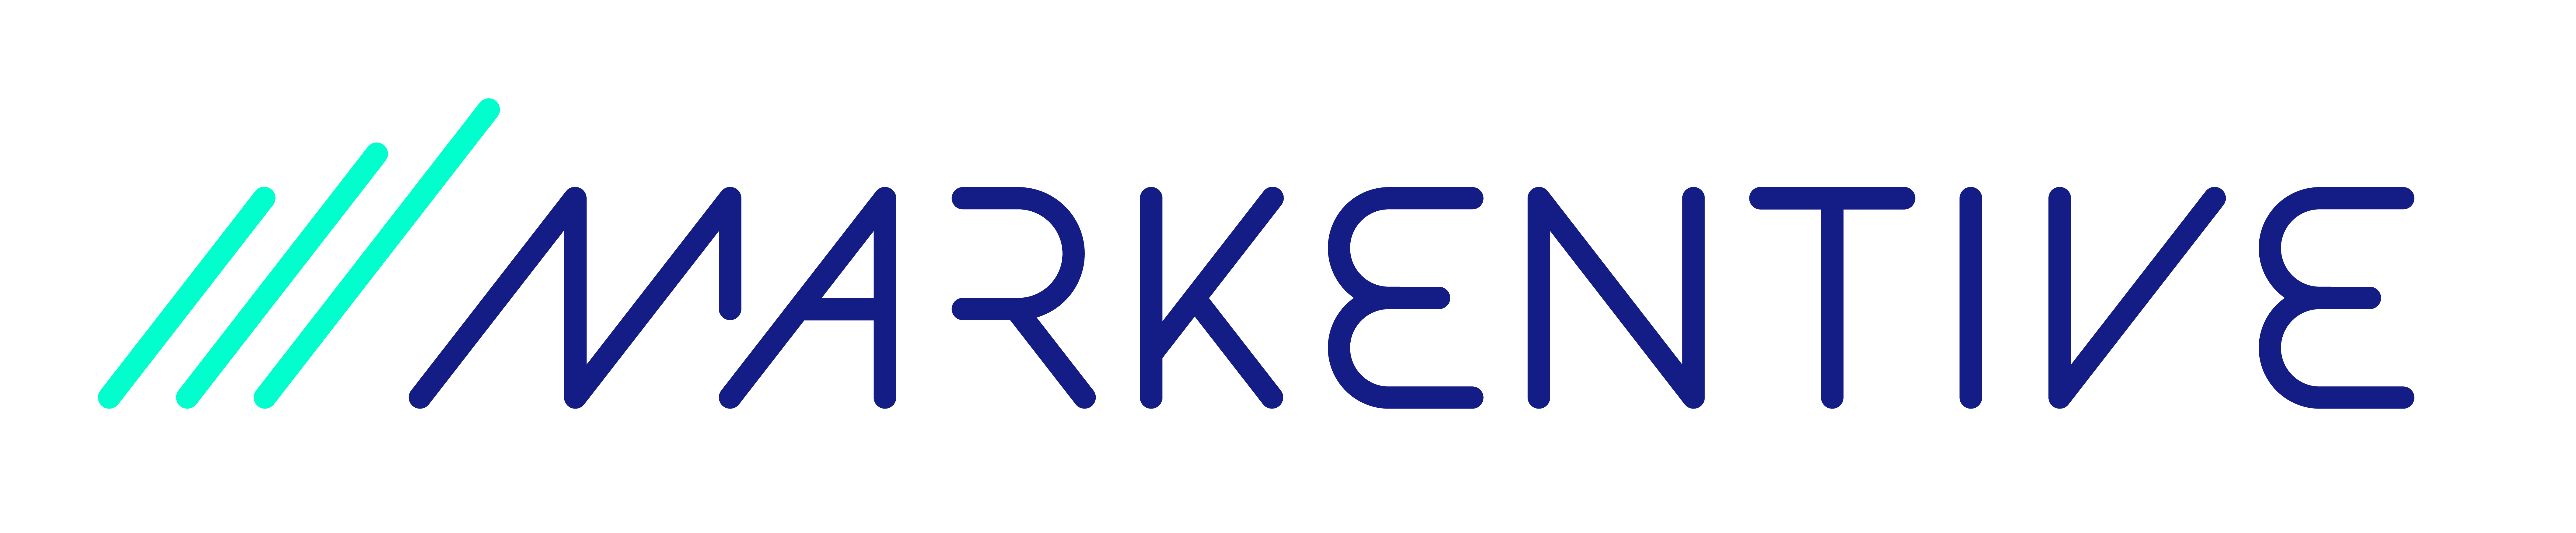 markentive-logo.jpg